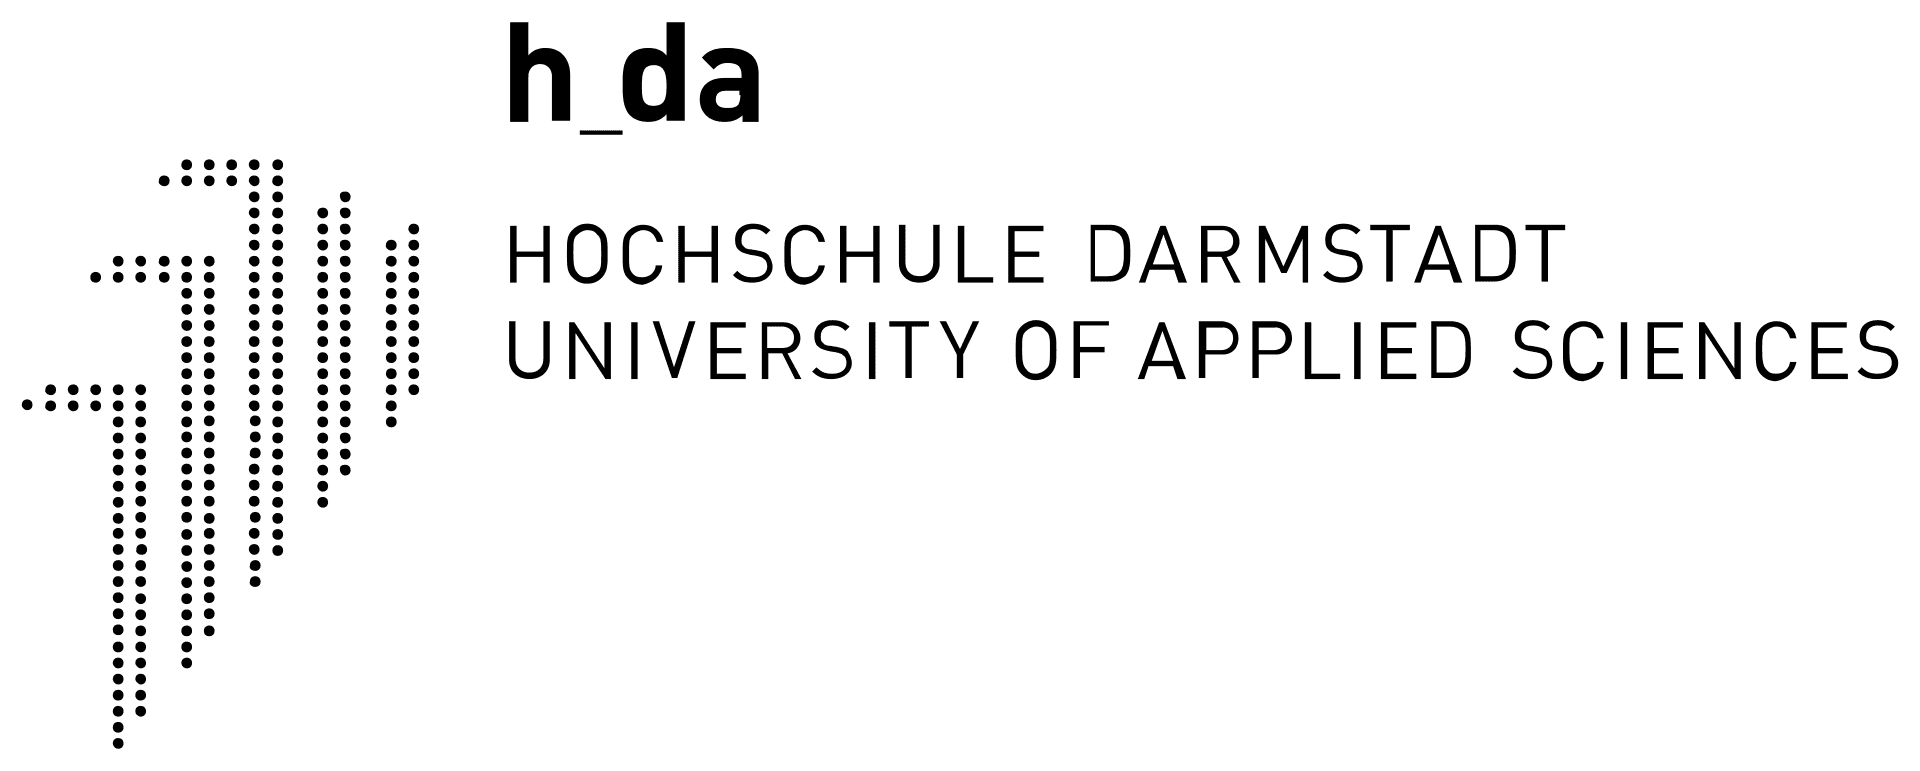 darmstadt-university-of-applied-sciences-4c59e78de7-cover-picture